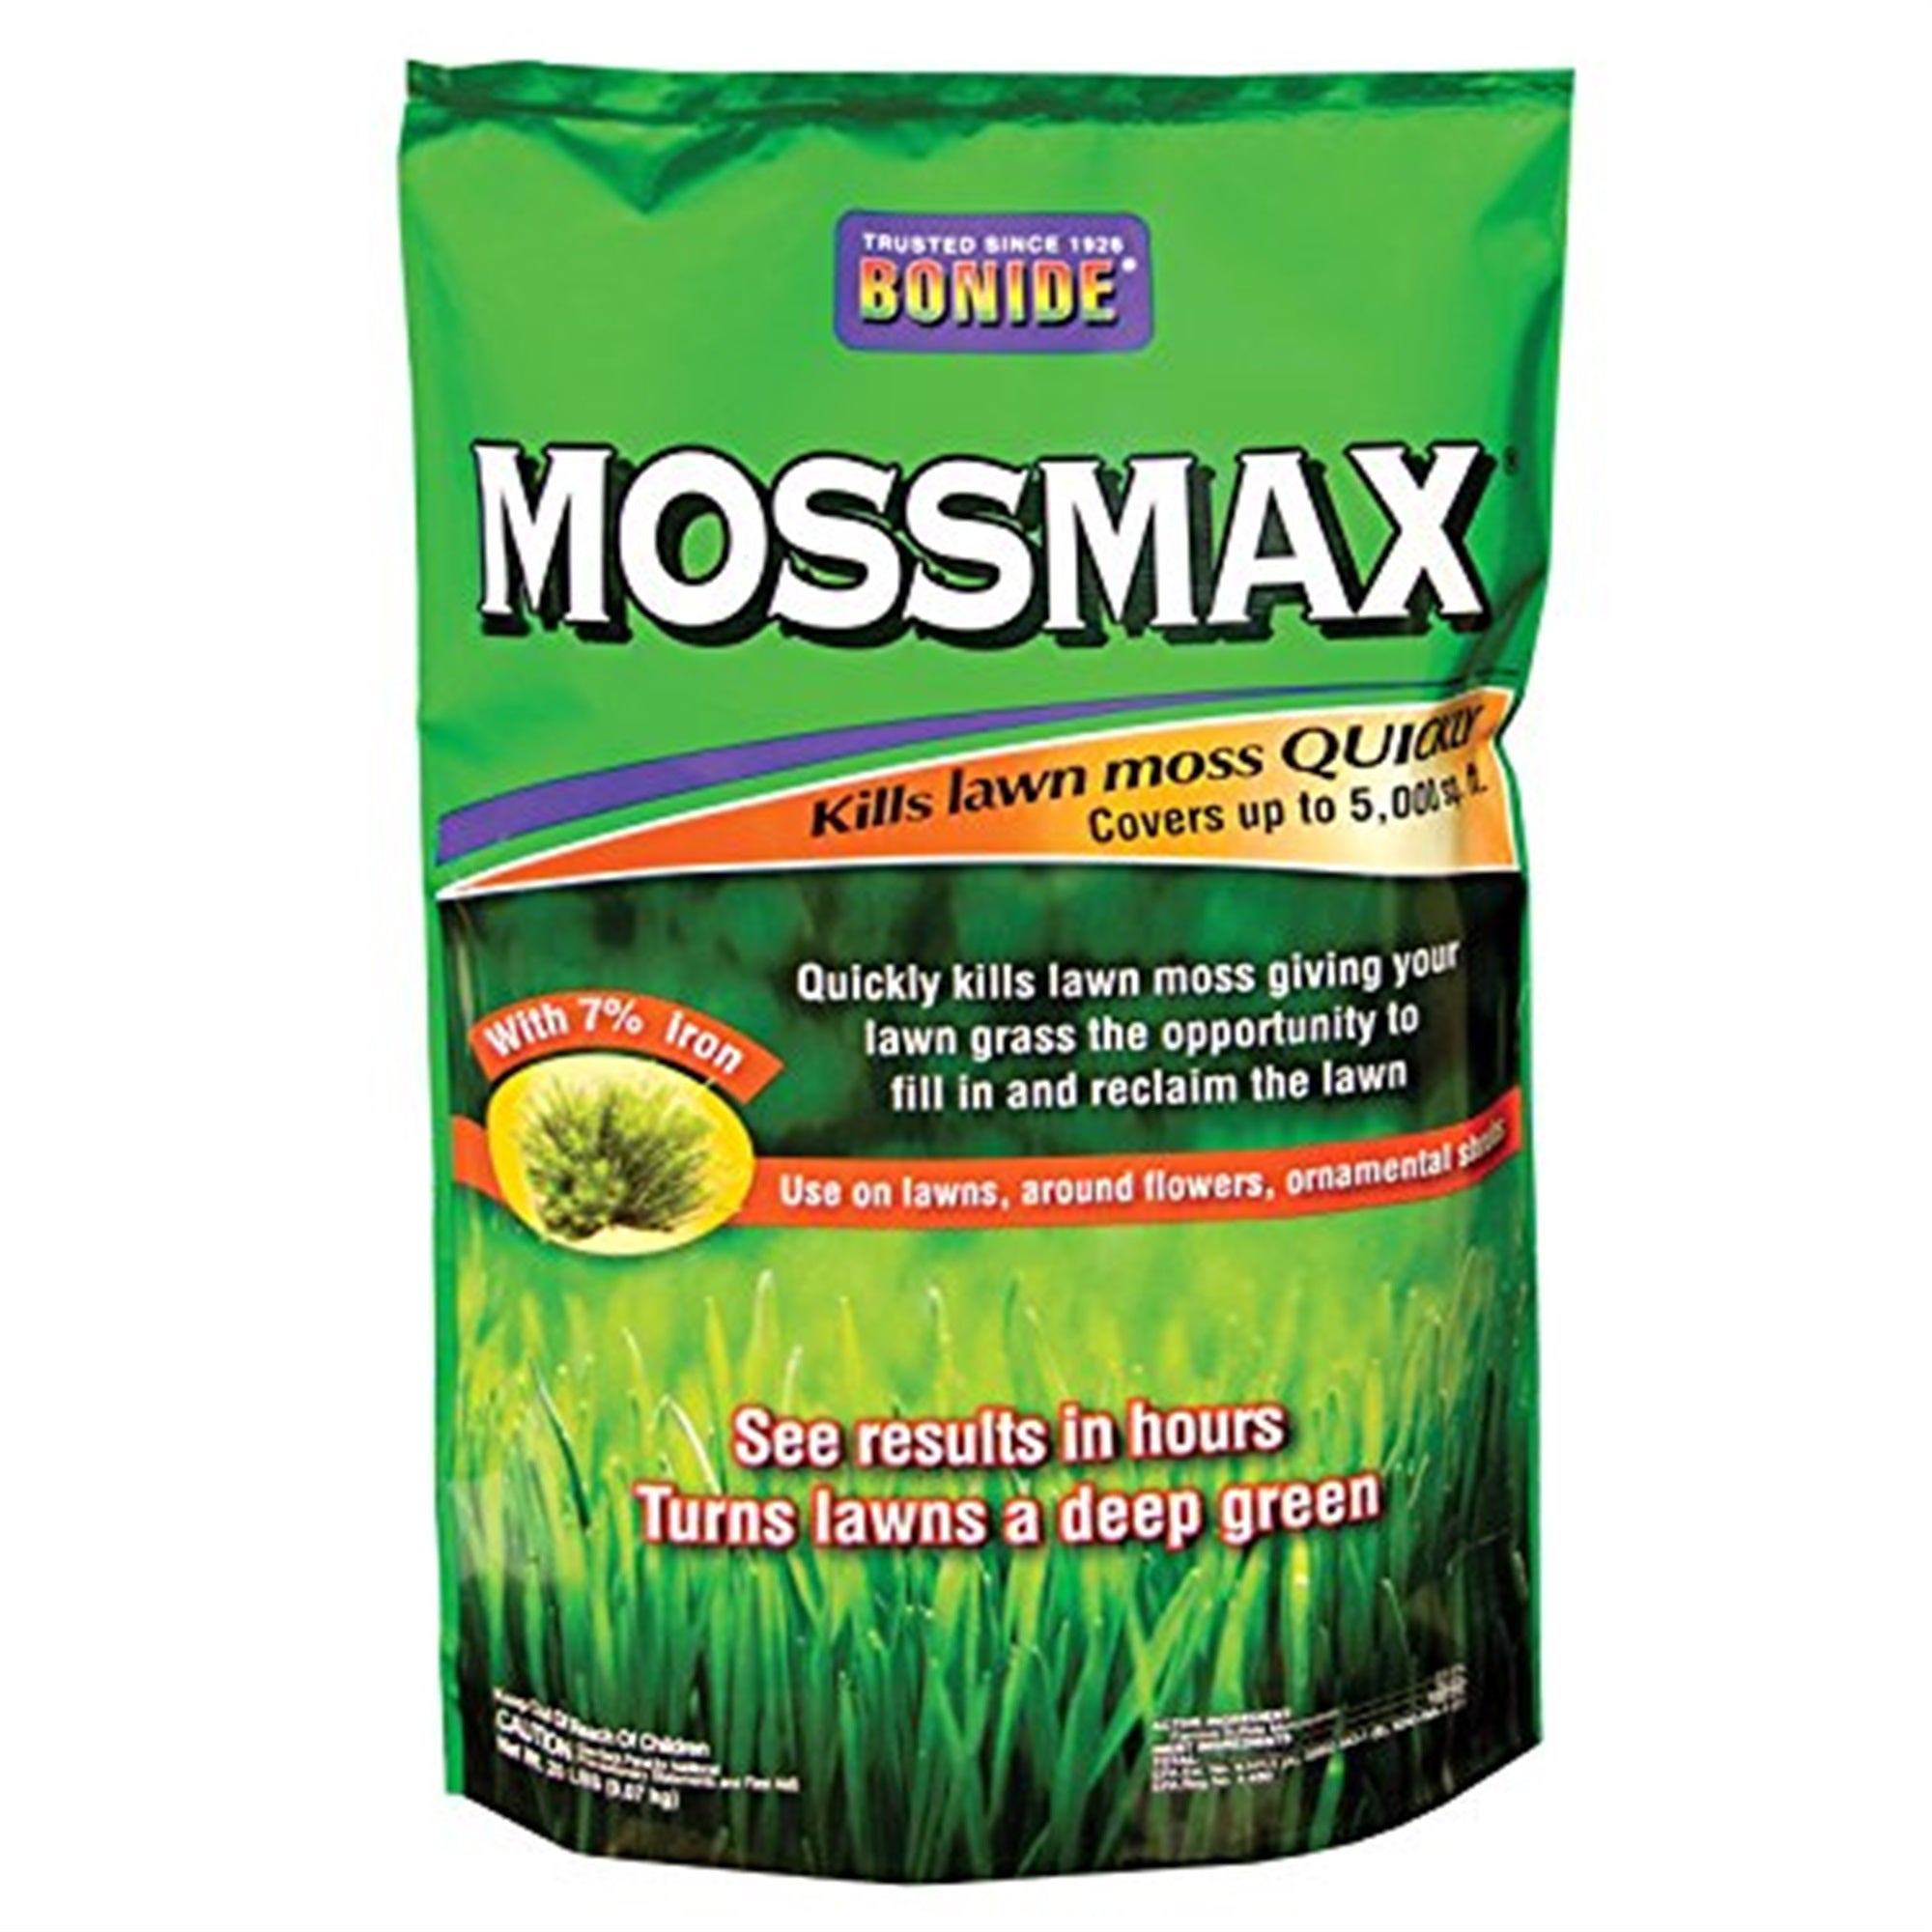 Bonide MossMax Lawn Granules, 20-Pound